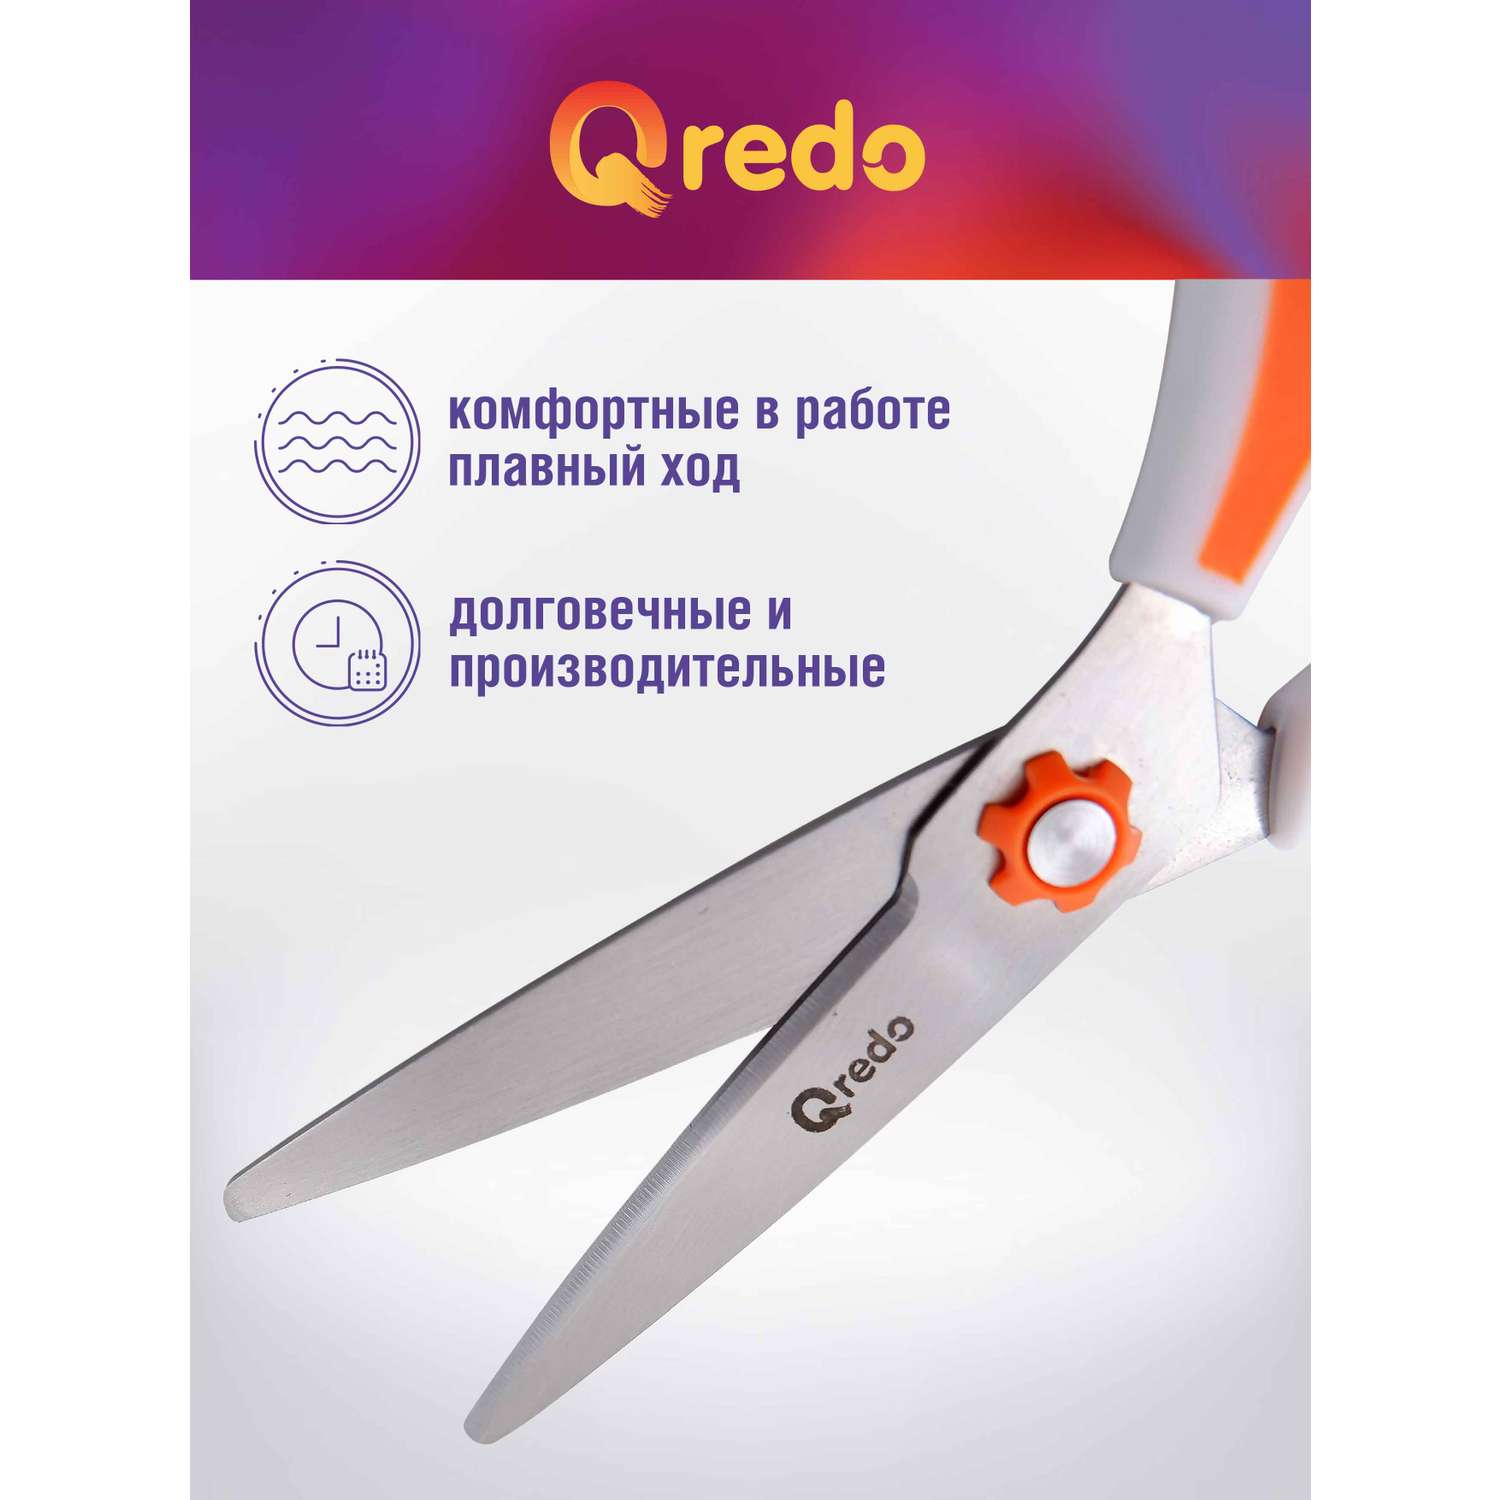 Ножницы Qredo 17 см ERGO-GO 3D лезвие эргономичные ручки белый оранжевый пластик прорезиненные - фото 3